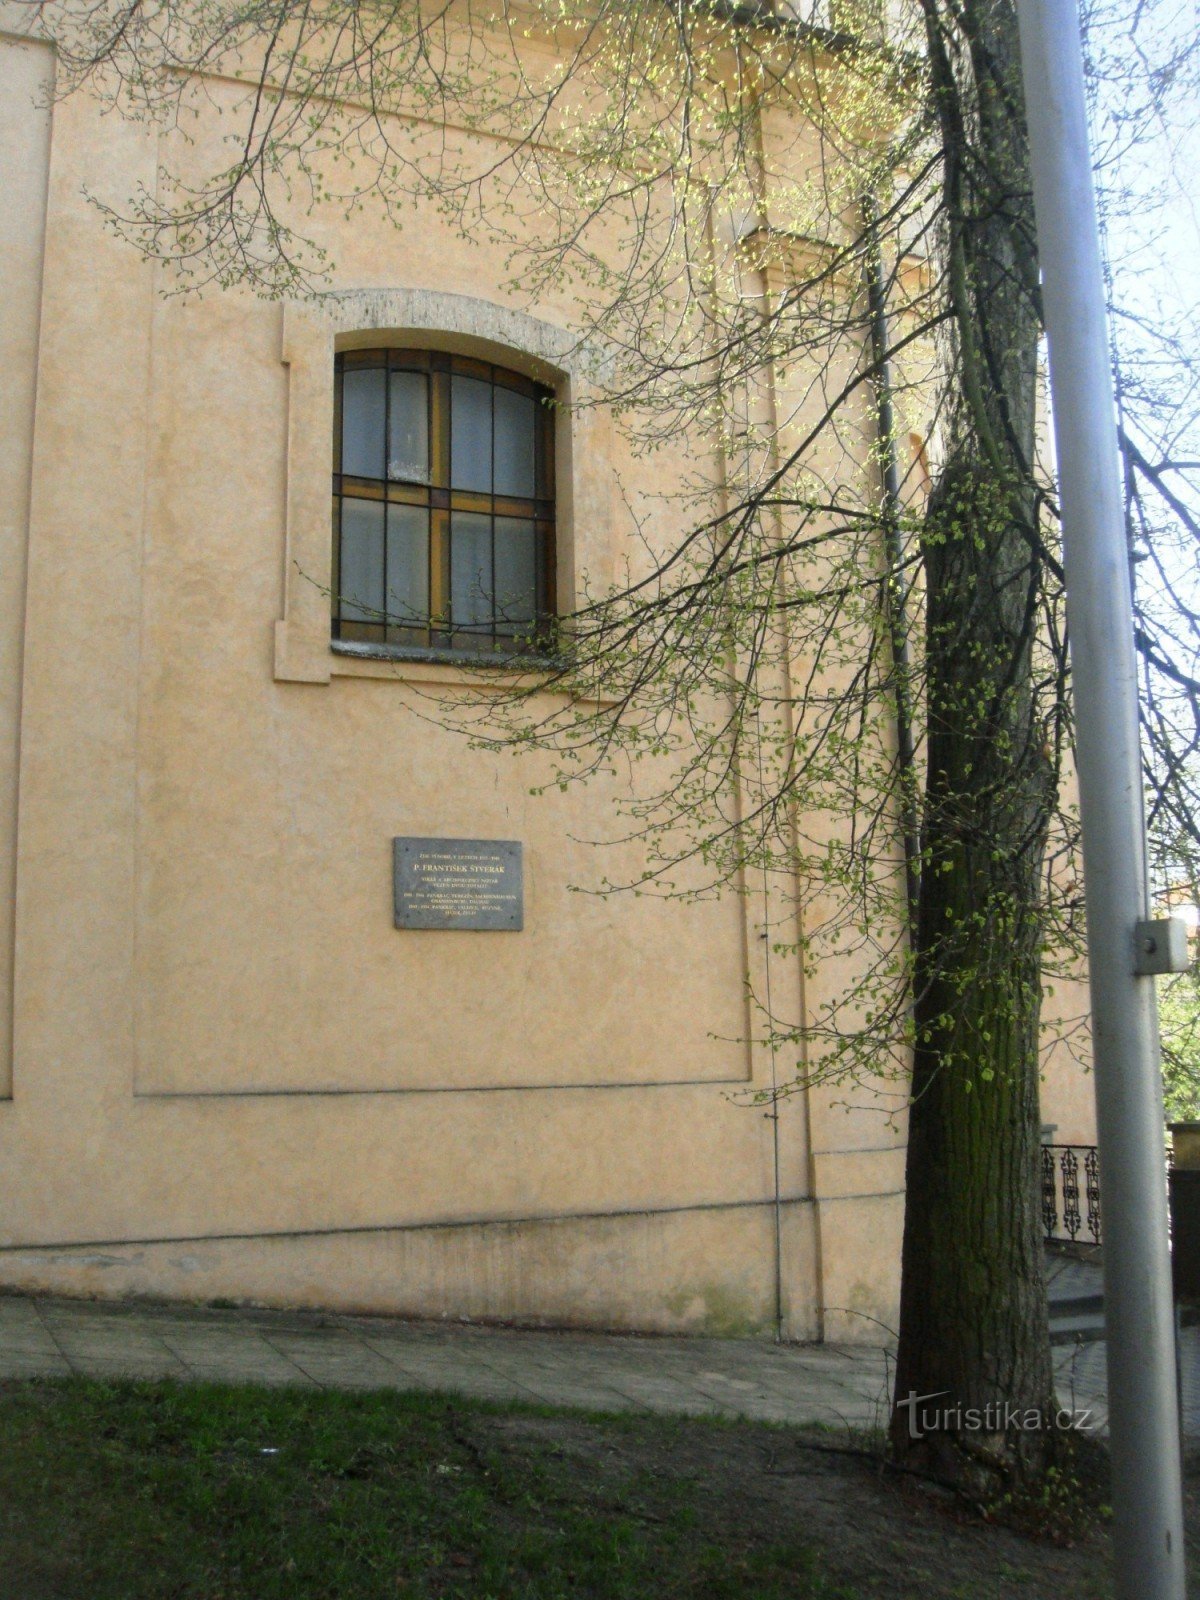 Dvorac Chvalsky